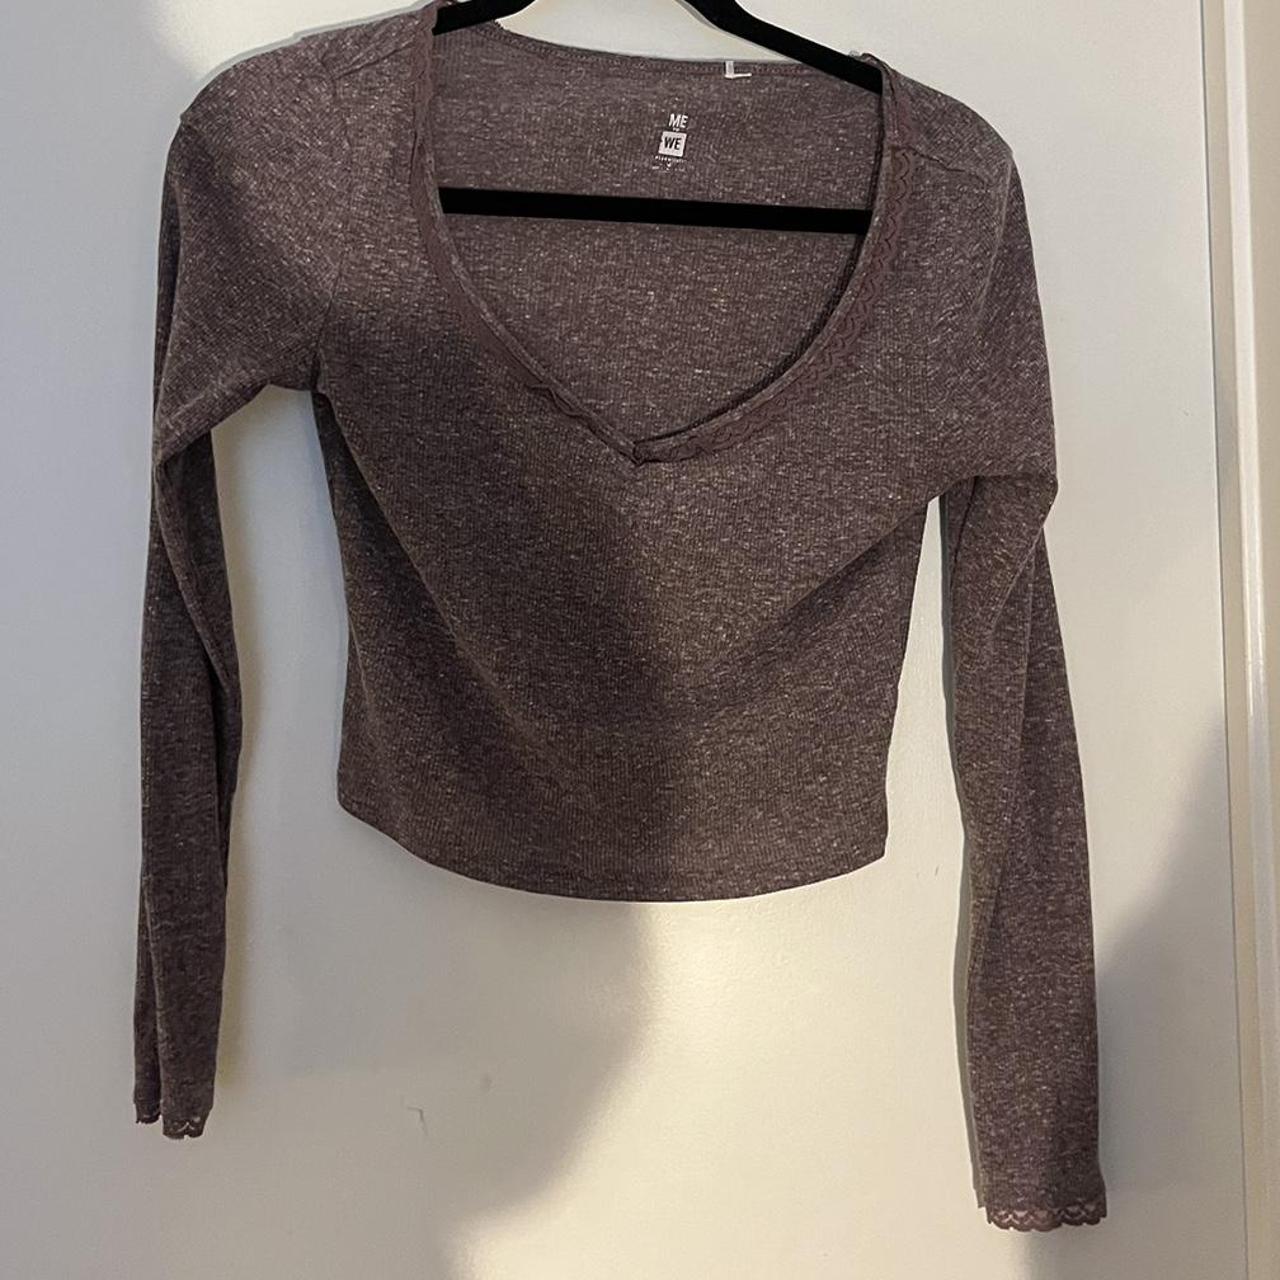 Shannon Super Thin Cotton Sweater